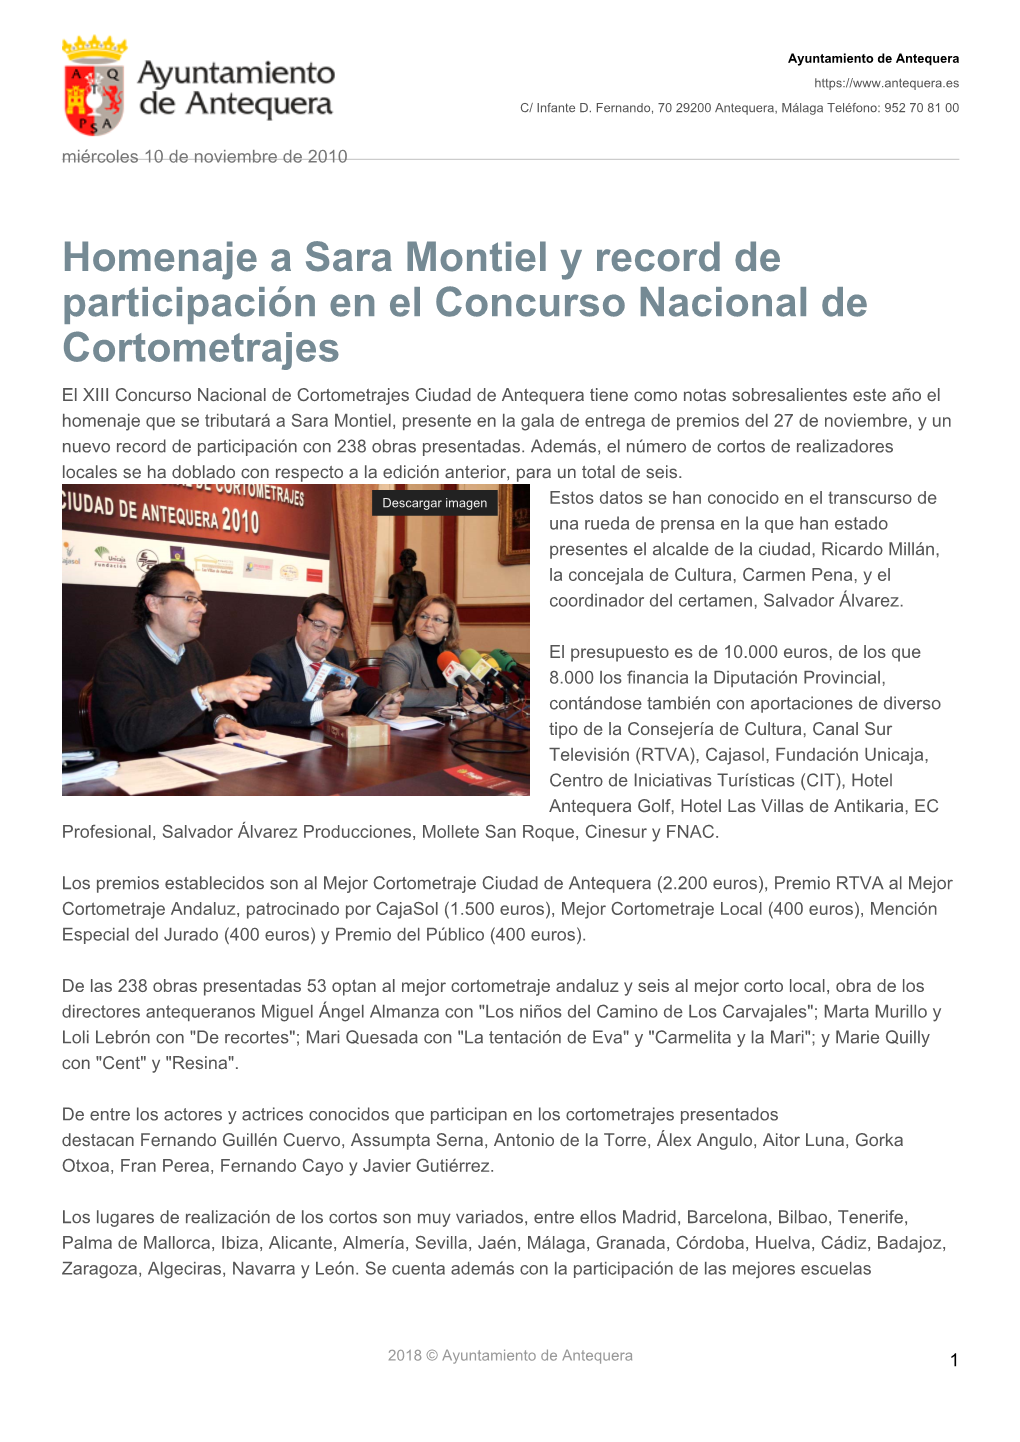 Homenaje a Sara Montiel Y Record De Participación En El Concurso